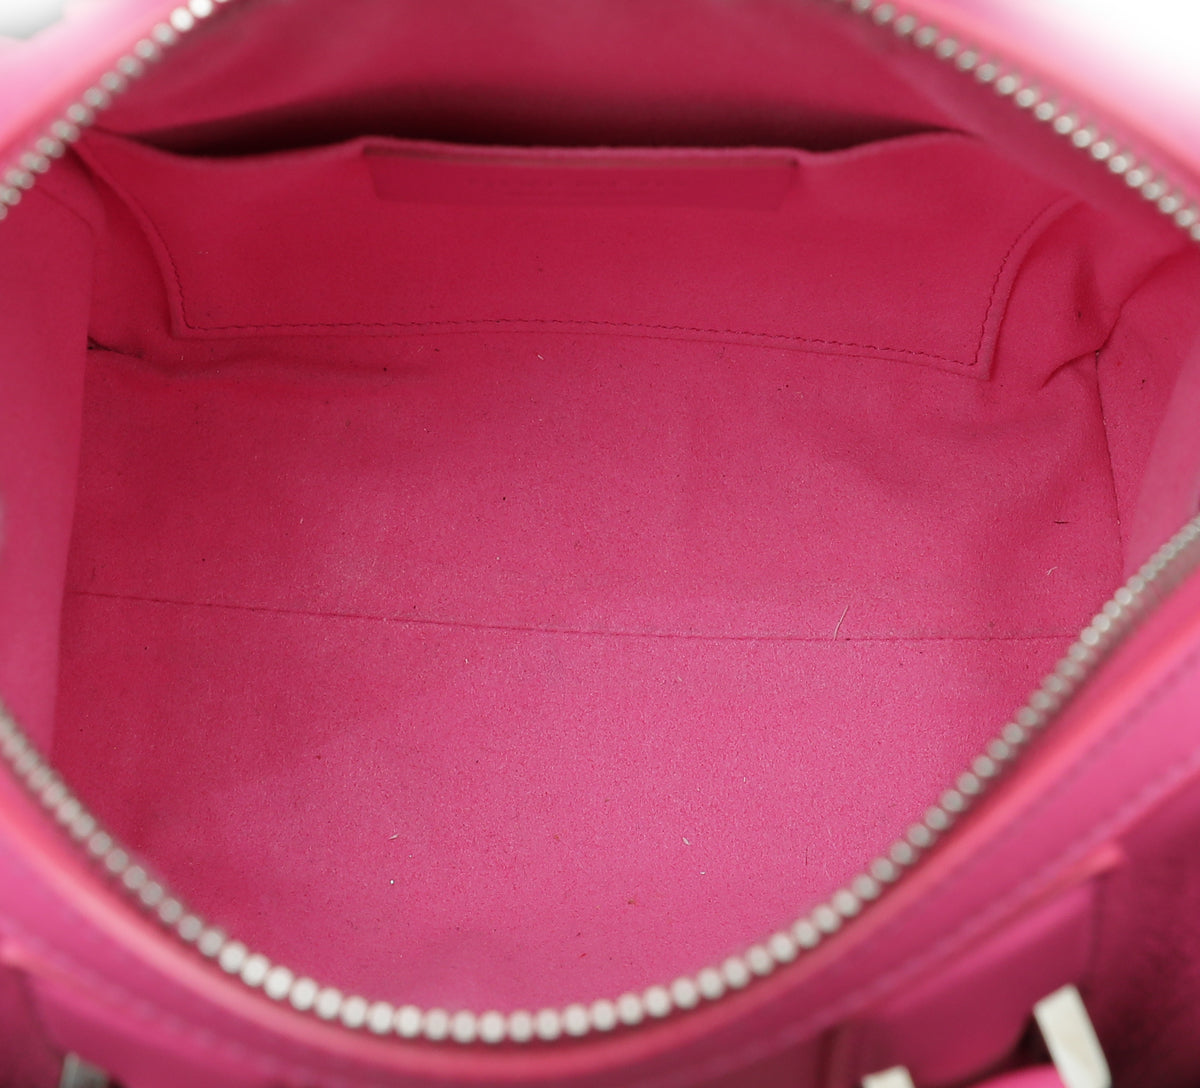 Givenchy Pink Flower Print Lucrezia Bag - BOUTIQUE PURCHASE PRICE –  PauméLosAngeles